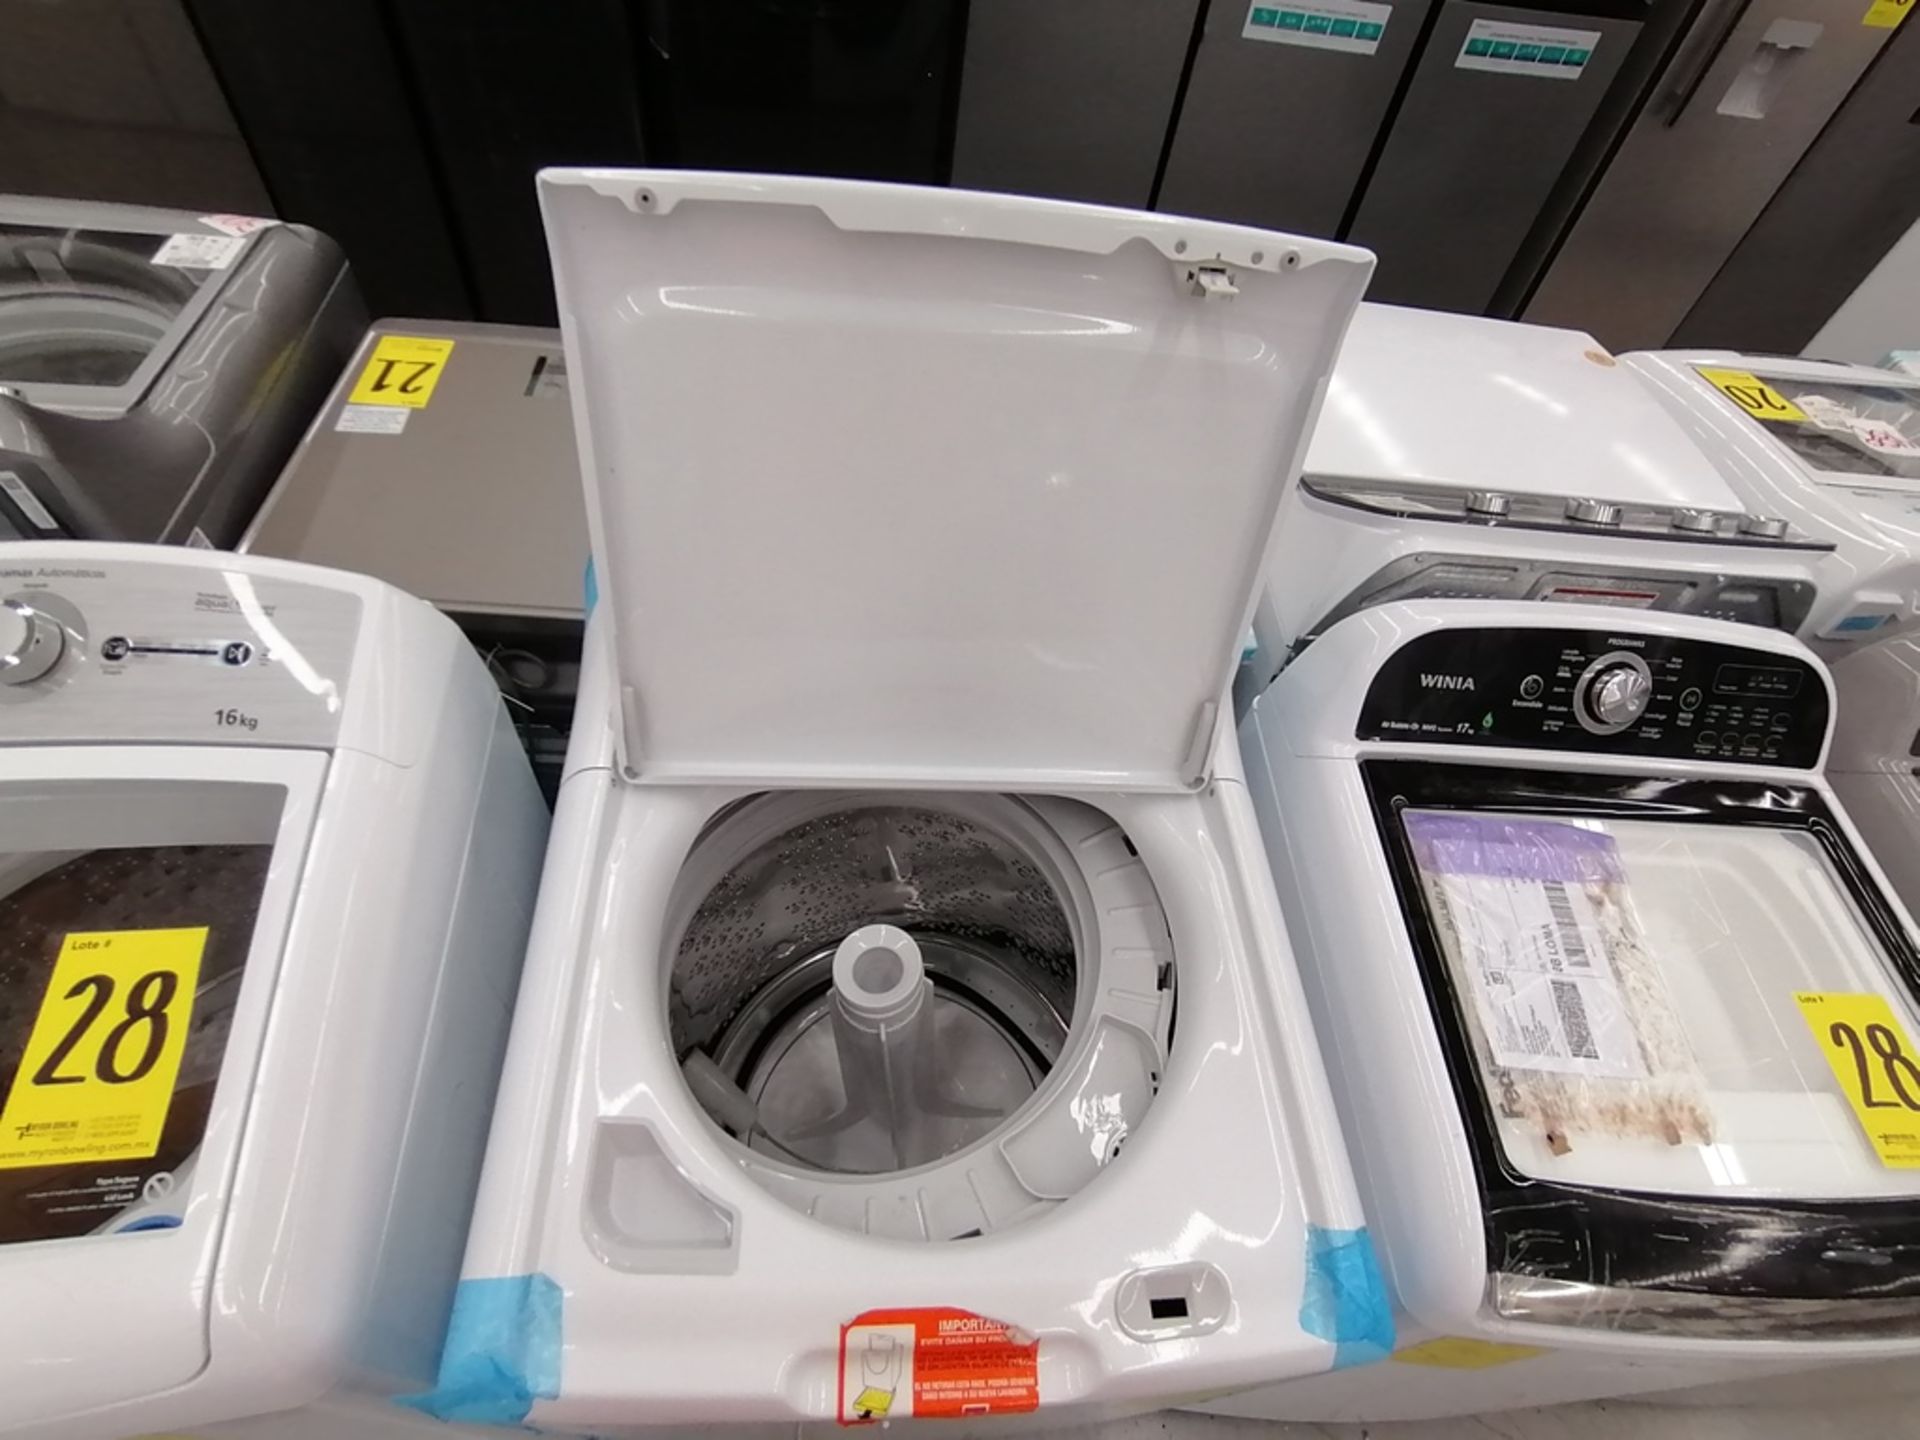 Lote de 3 lavadoras contiene: 1 Lavadora de 16KG, Marca Mabe, Modelo LMA46102VBAB02, Serie 2108S802 - Image 24 of 29